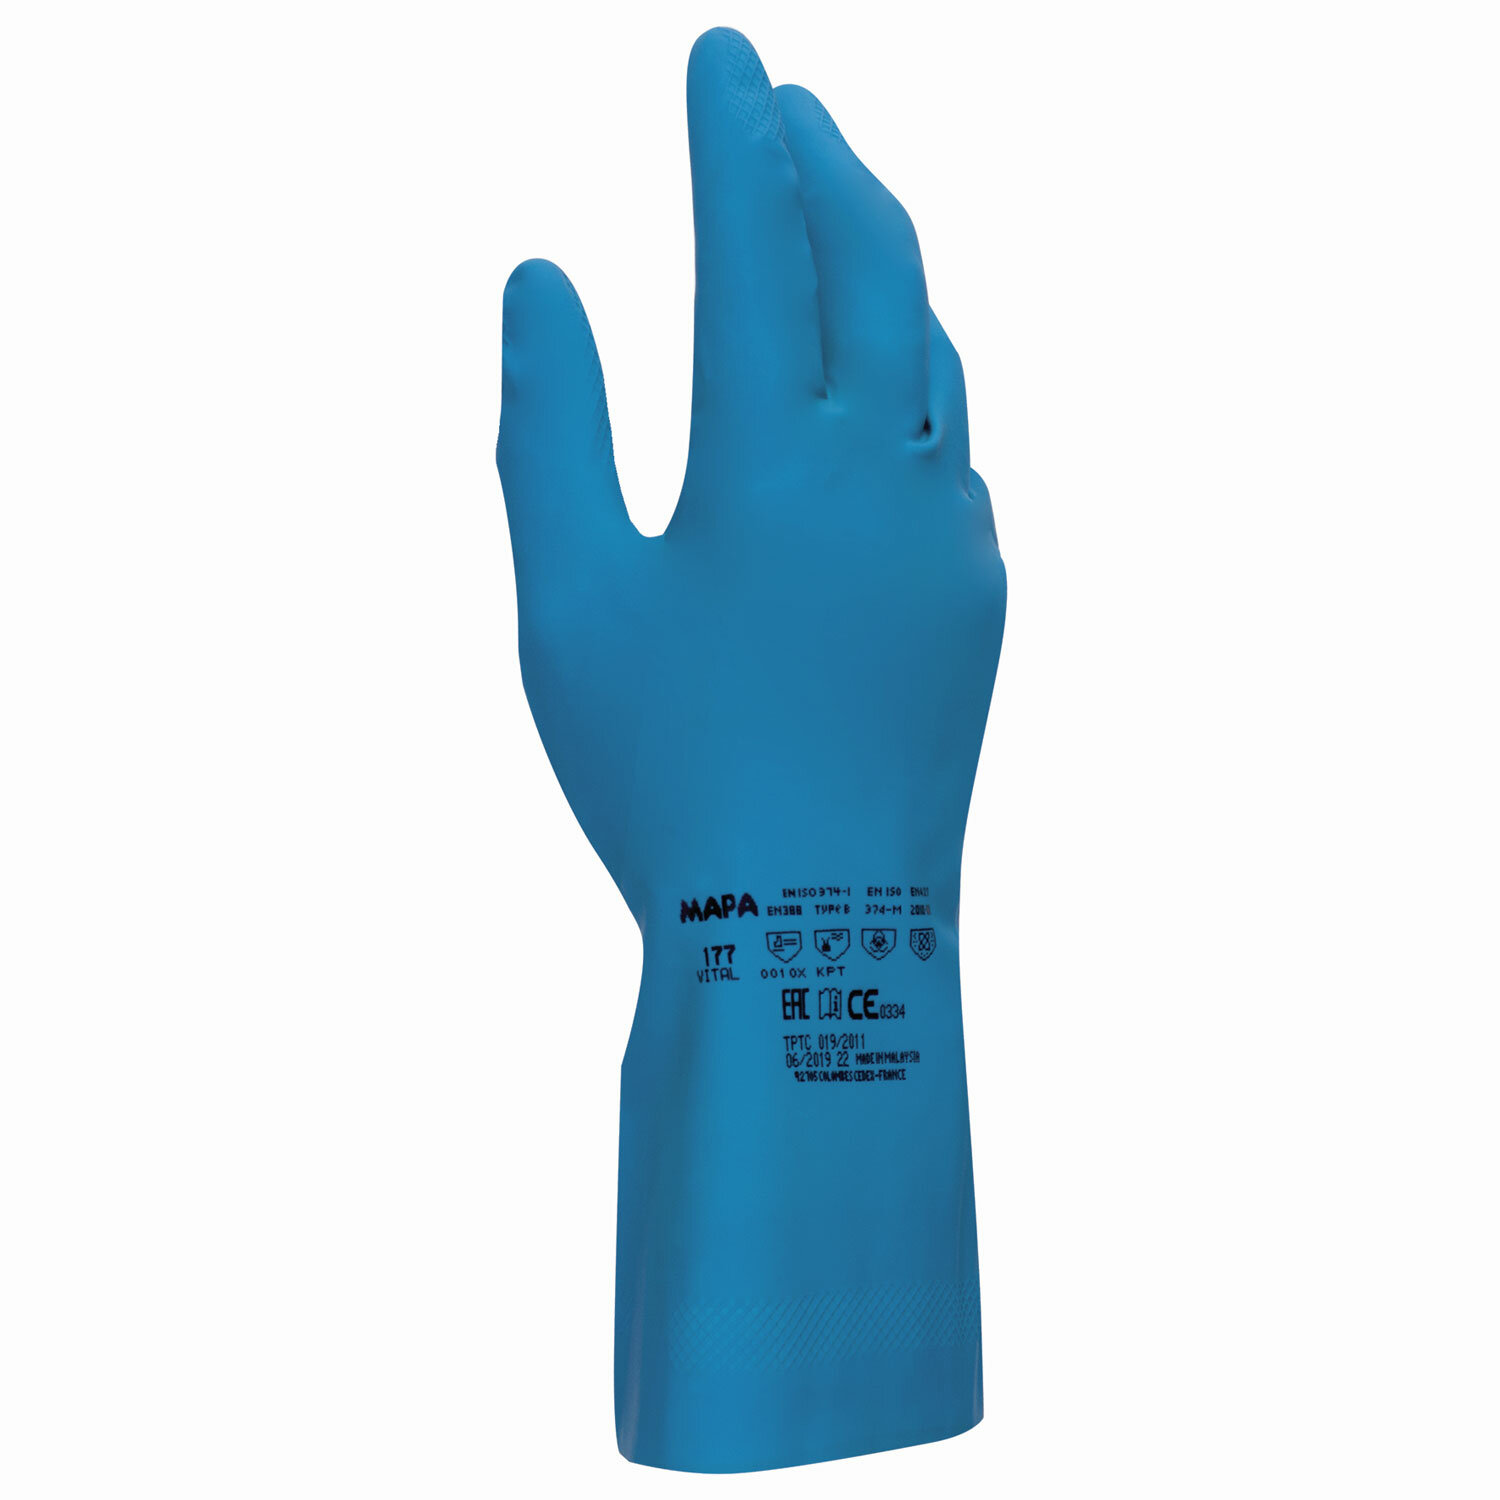 Перчатки хозяйственно-бытовые латексные, хлорированное покрытие, от химических воздействий, 8 (M), синий, MAPA Superfood/Vital (Vital 177)